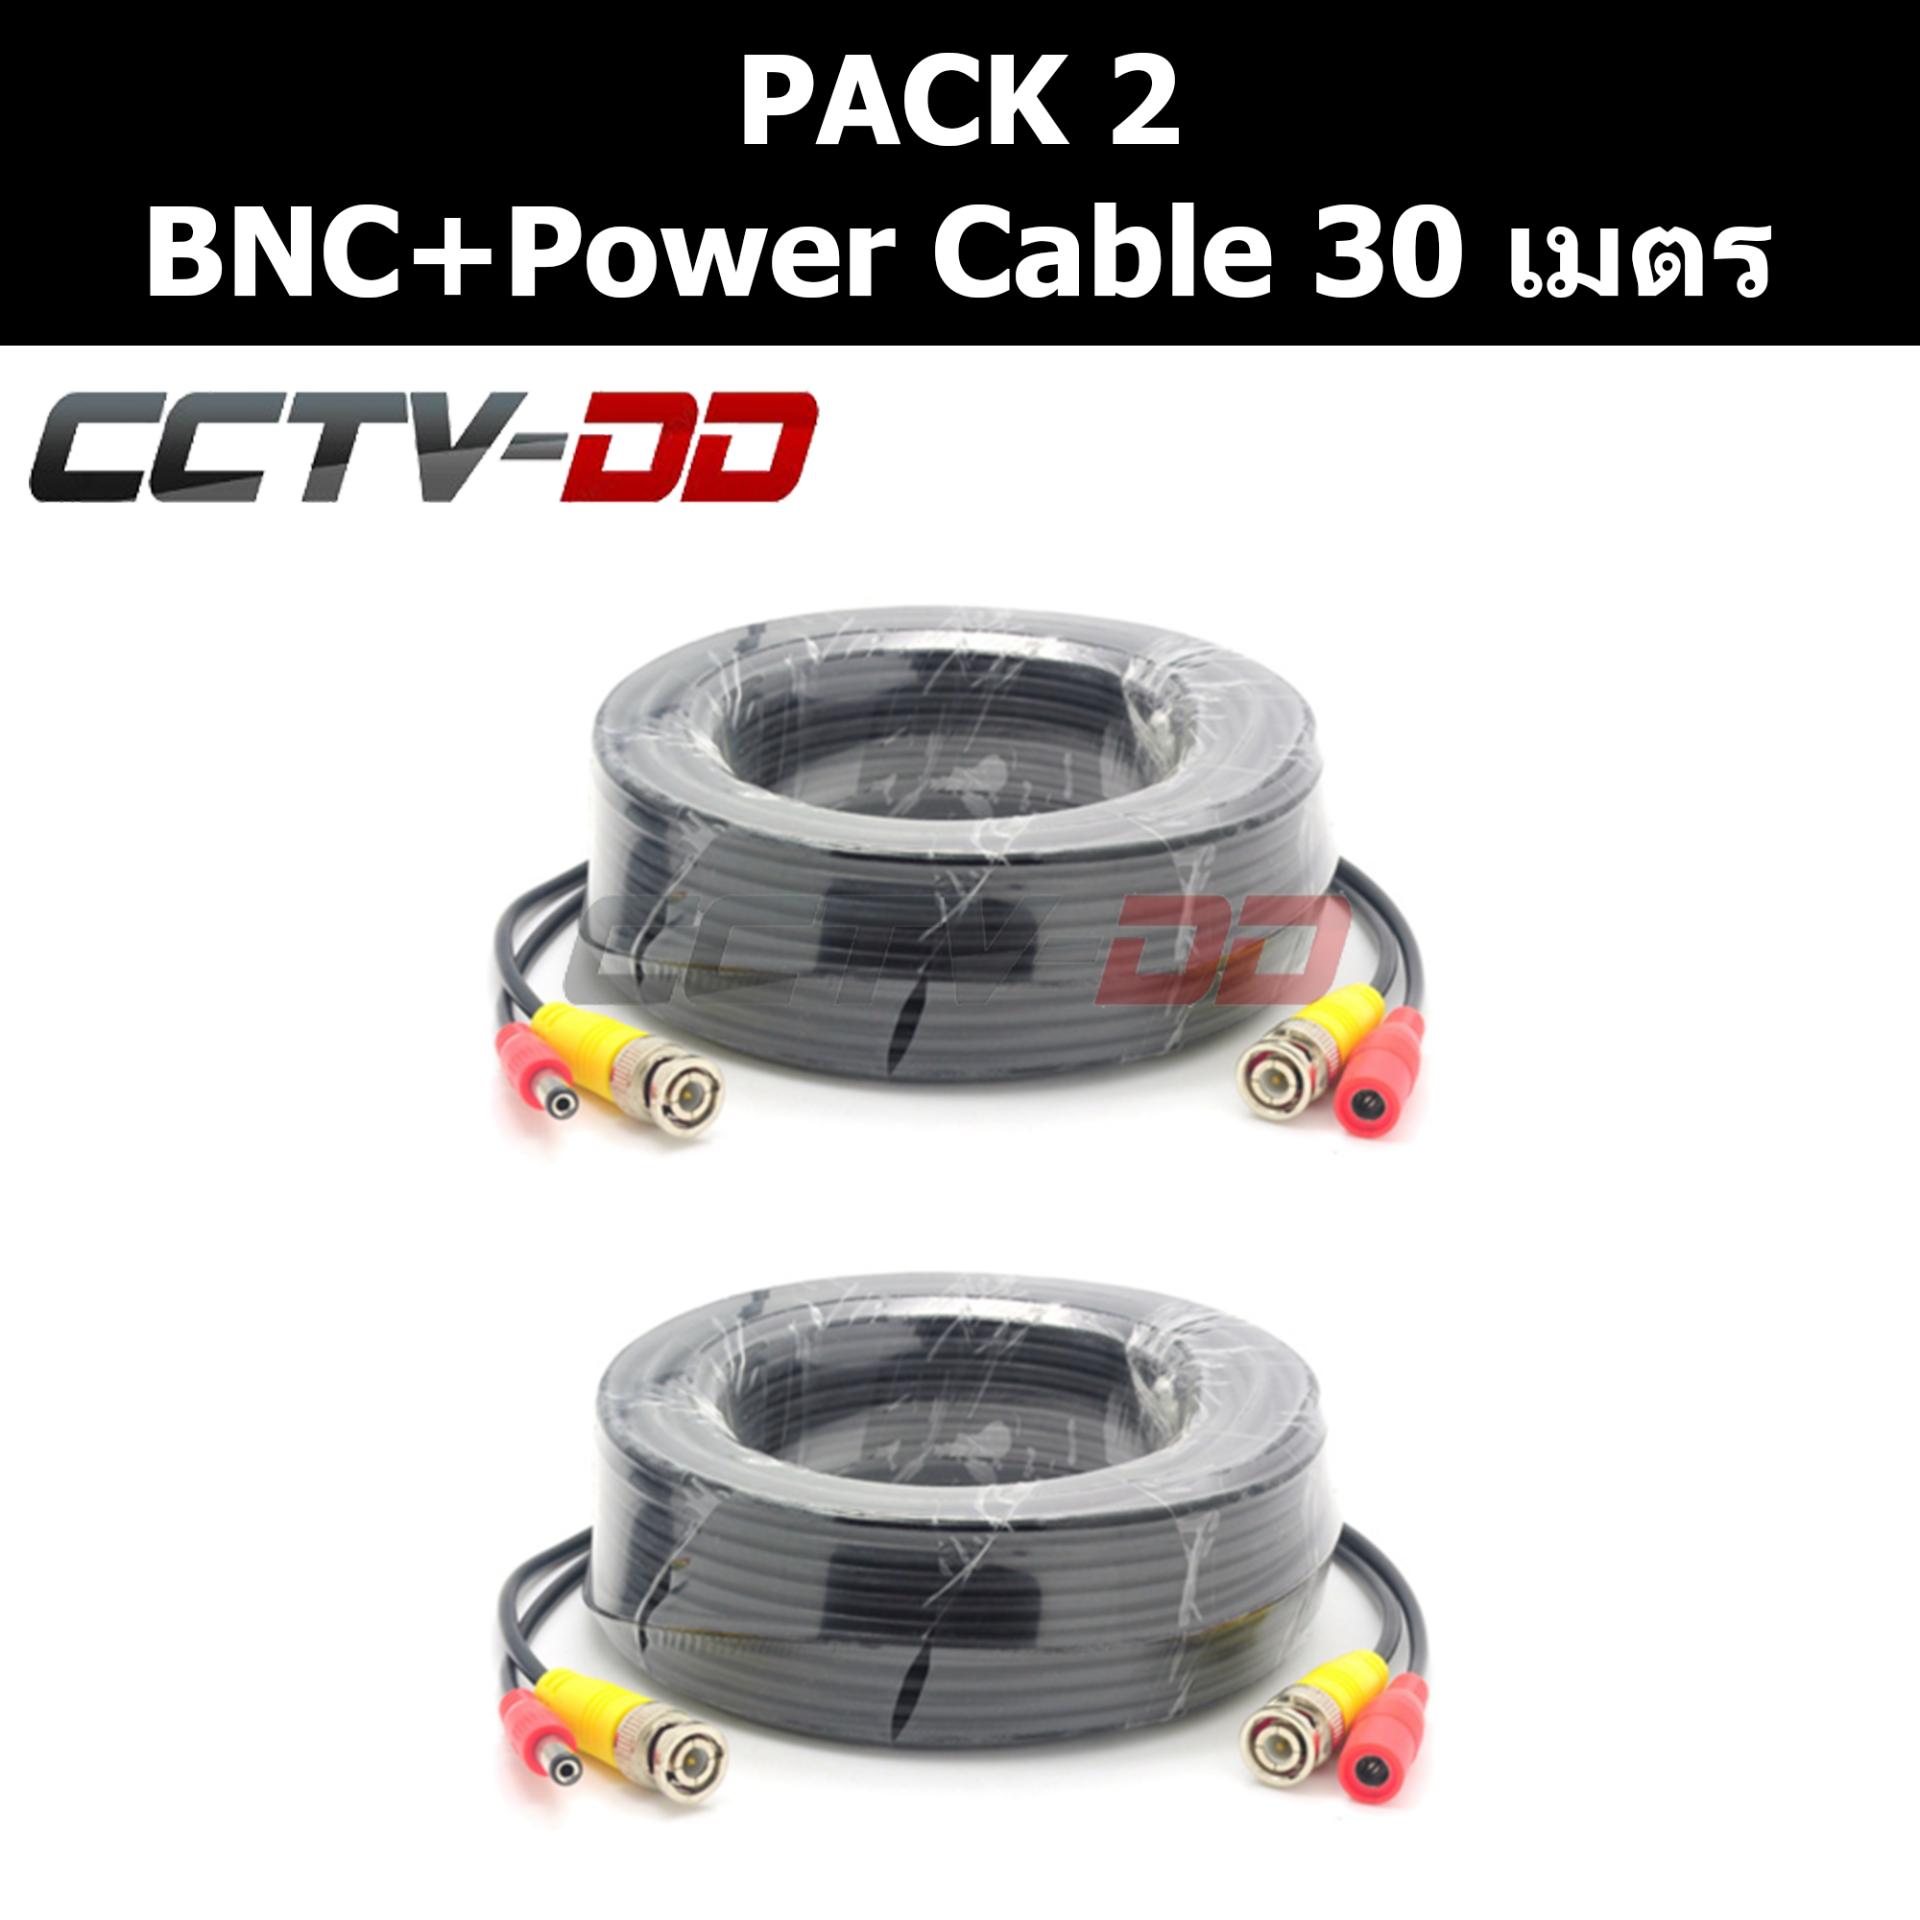 สายสำเร็จรูป สำหรับกล้องวงจรปิด BNC+power cable 30 เมตร Pack 2